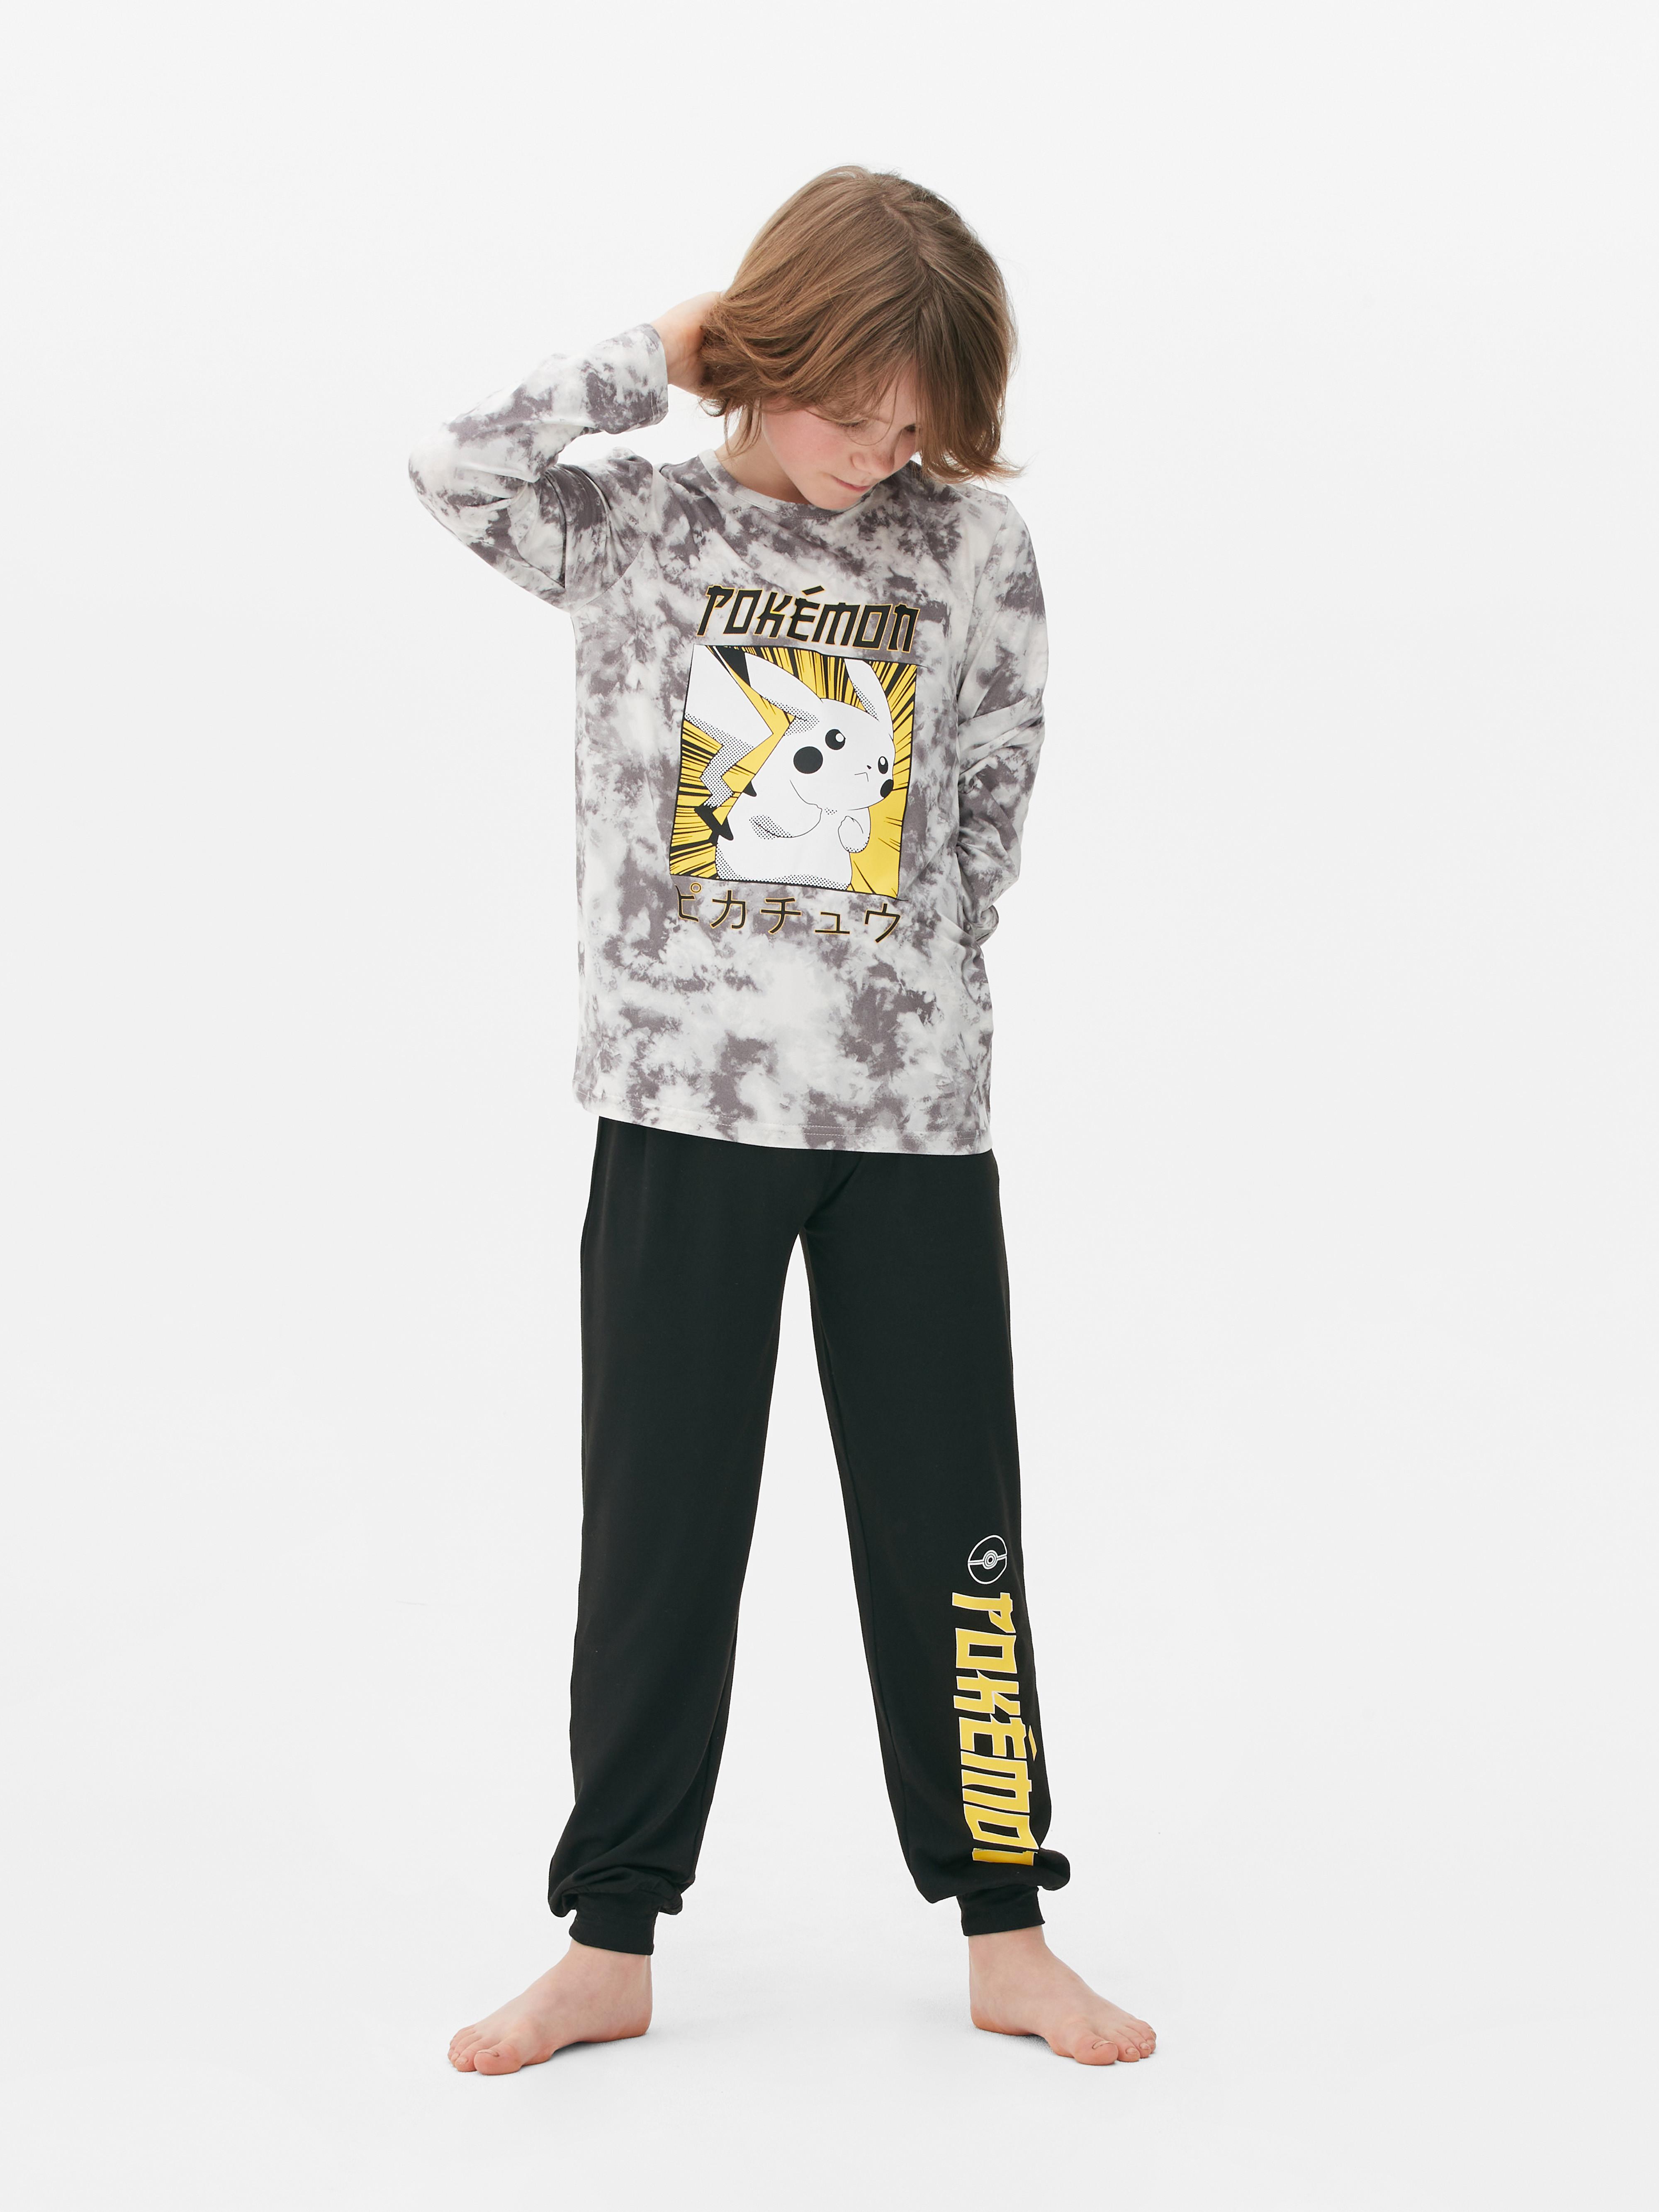 Pokémon Pikachu Long Sleeve Pajama Set